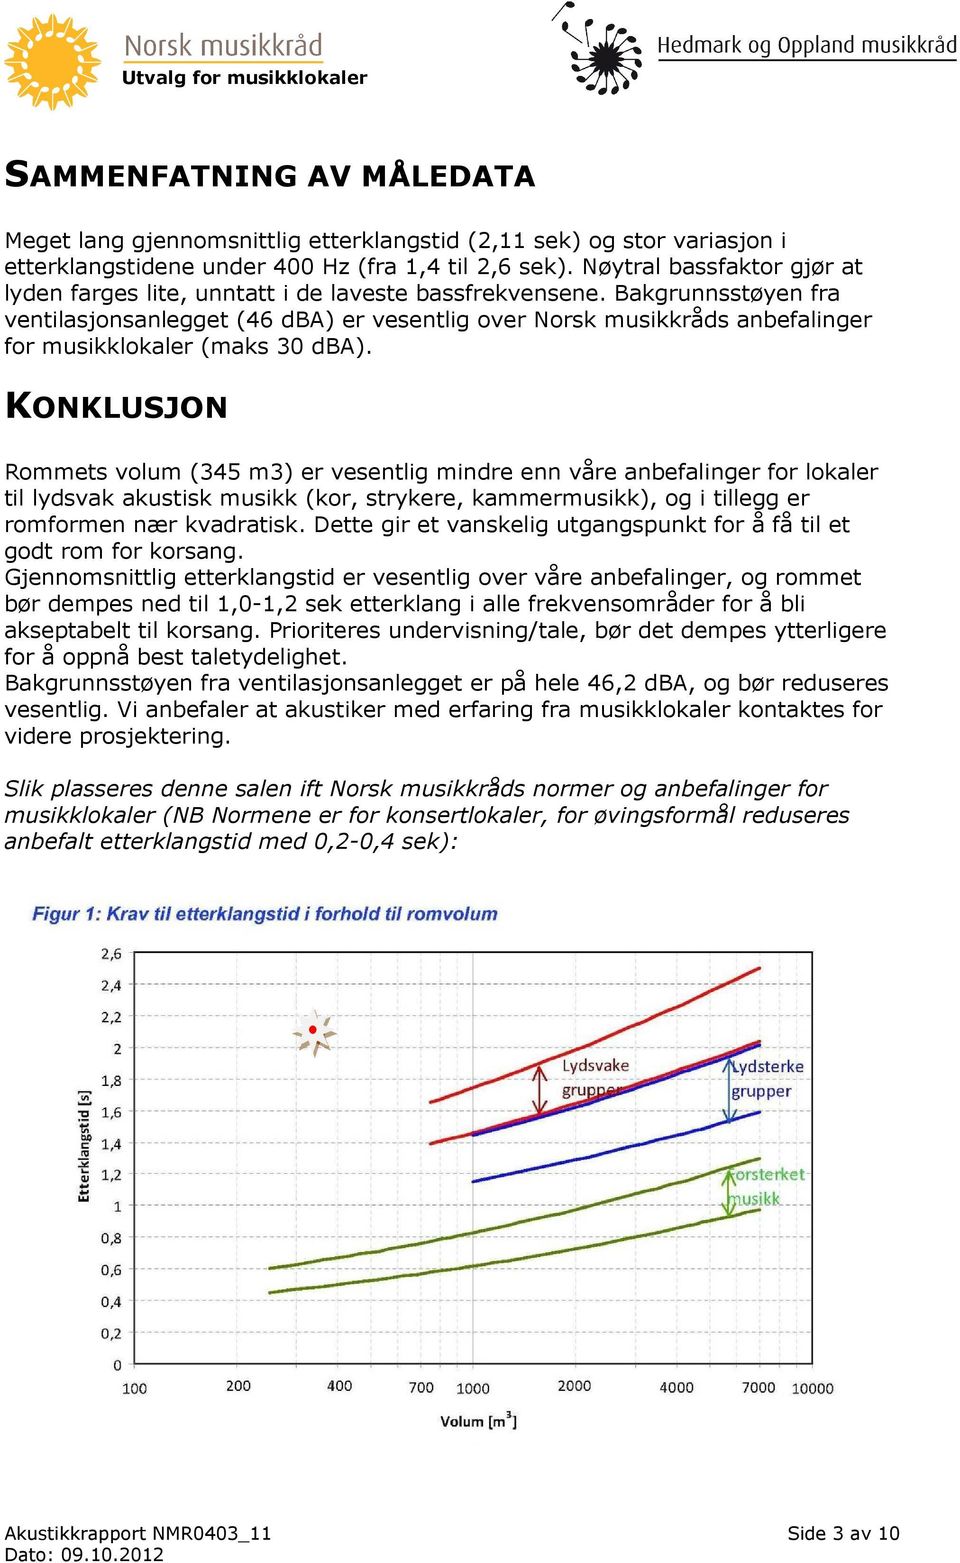 Bakgrunnsstøyen fra ventilasjonsanlegget (46 dba) er vesentlig over Norsk musikkråds anbefalinger for musikklokaler (maks 30 dba).